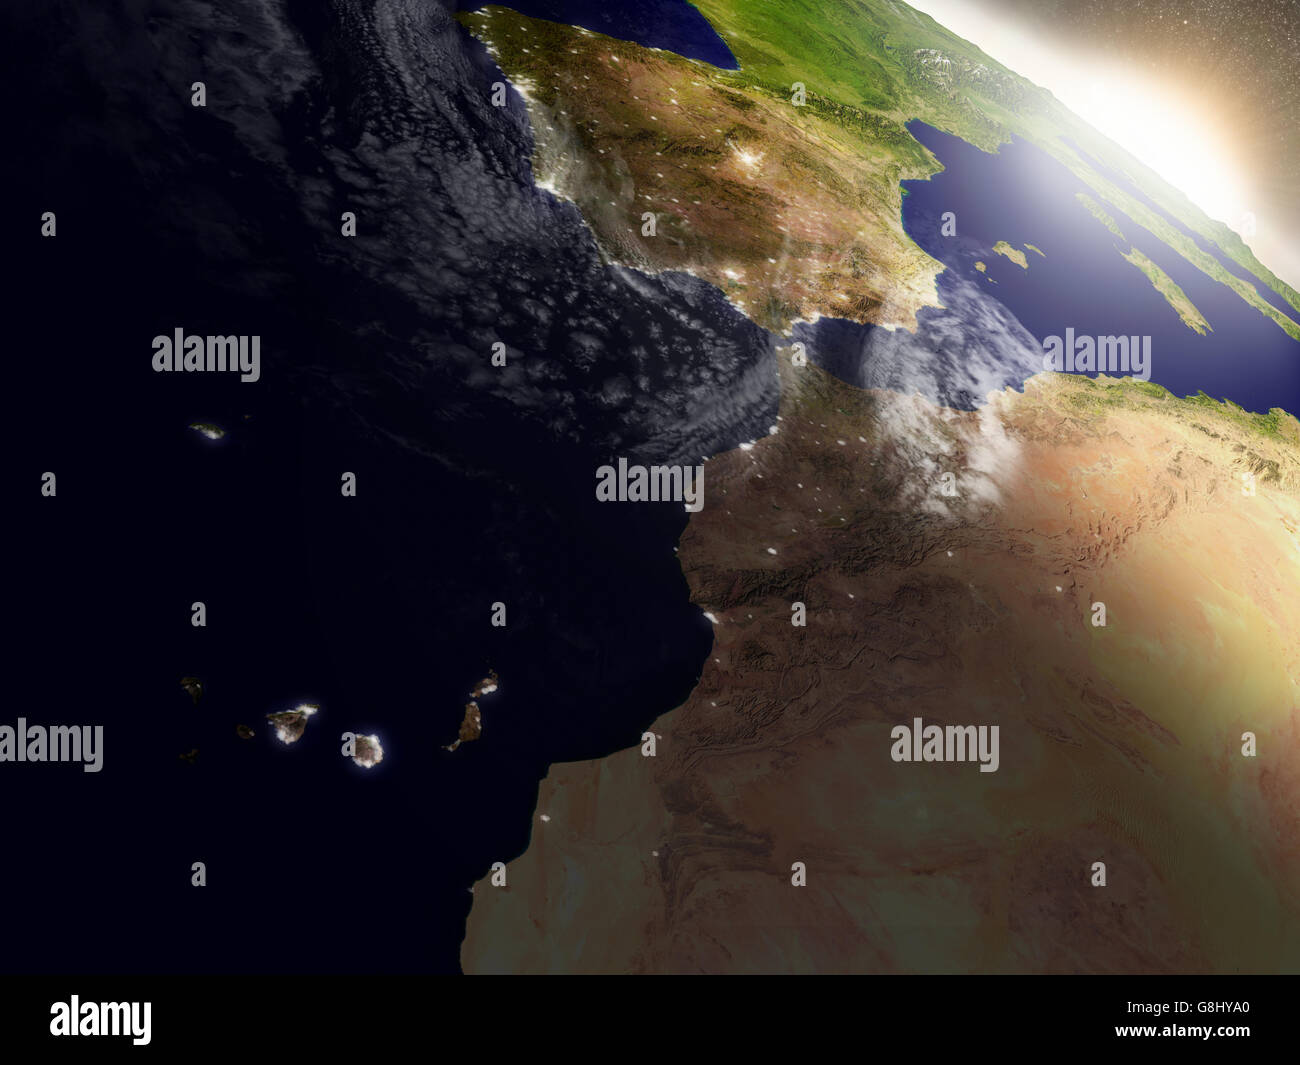 Le Maroc avec sa région pendant le lever du soleil vu de l'orbite de la Terre dans l'espace. Illustration 3D très détaillées avec réalisme Banque D'Images